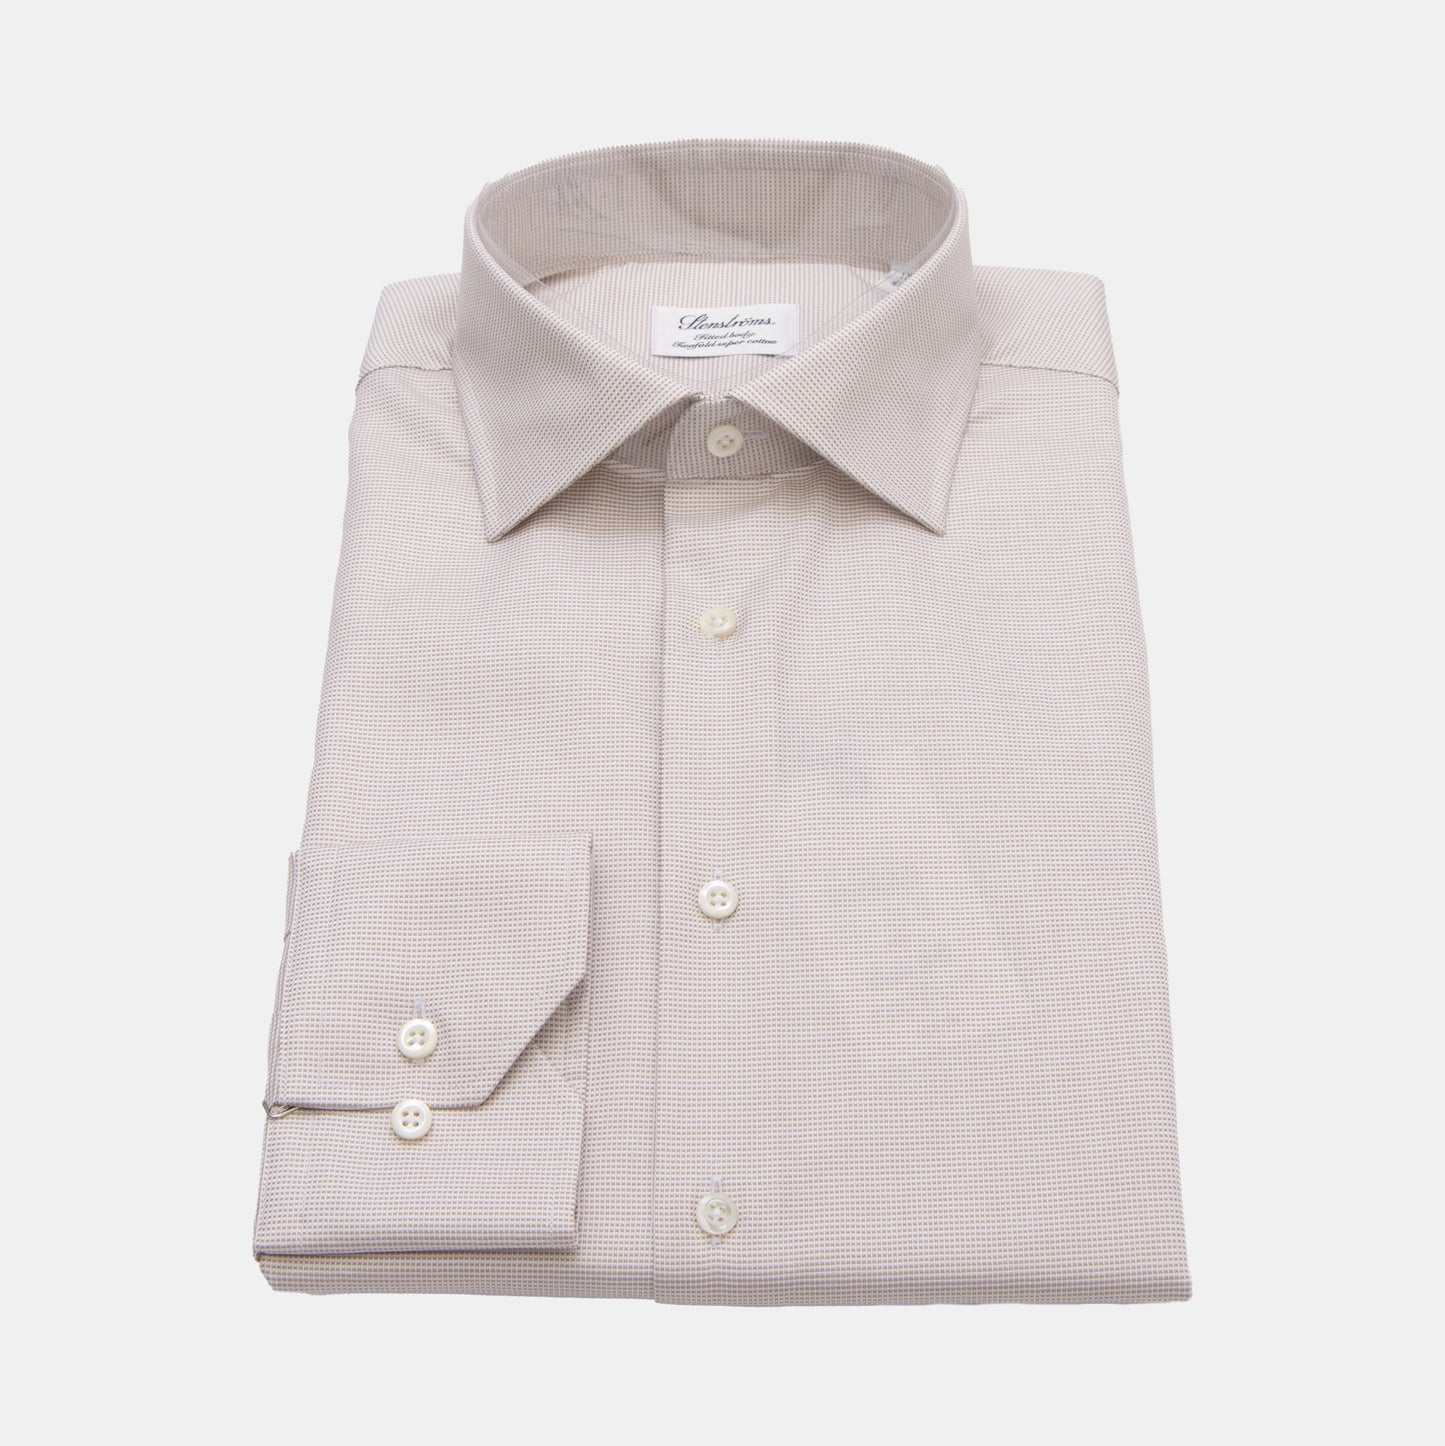 Khaki’s of Carmel - Brown Shirt